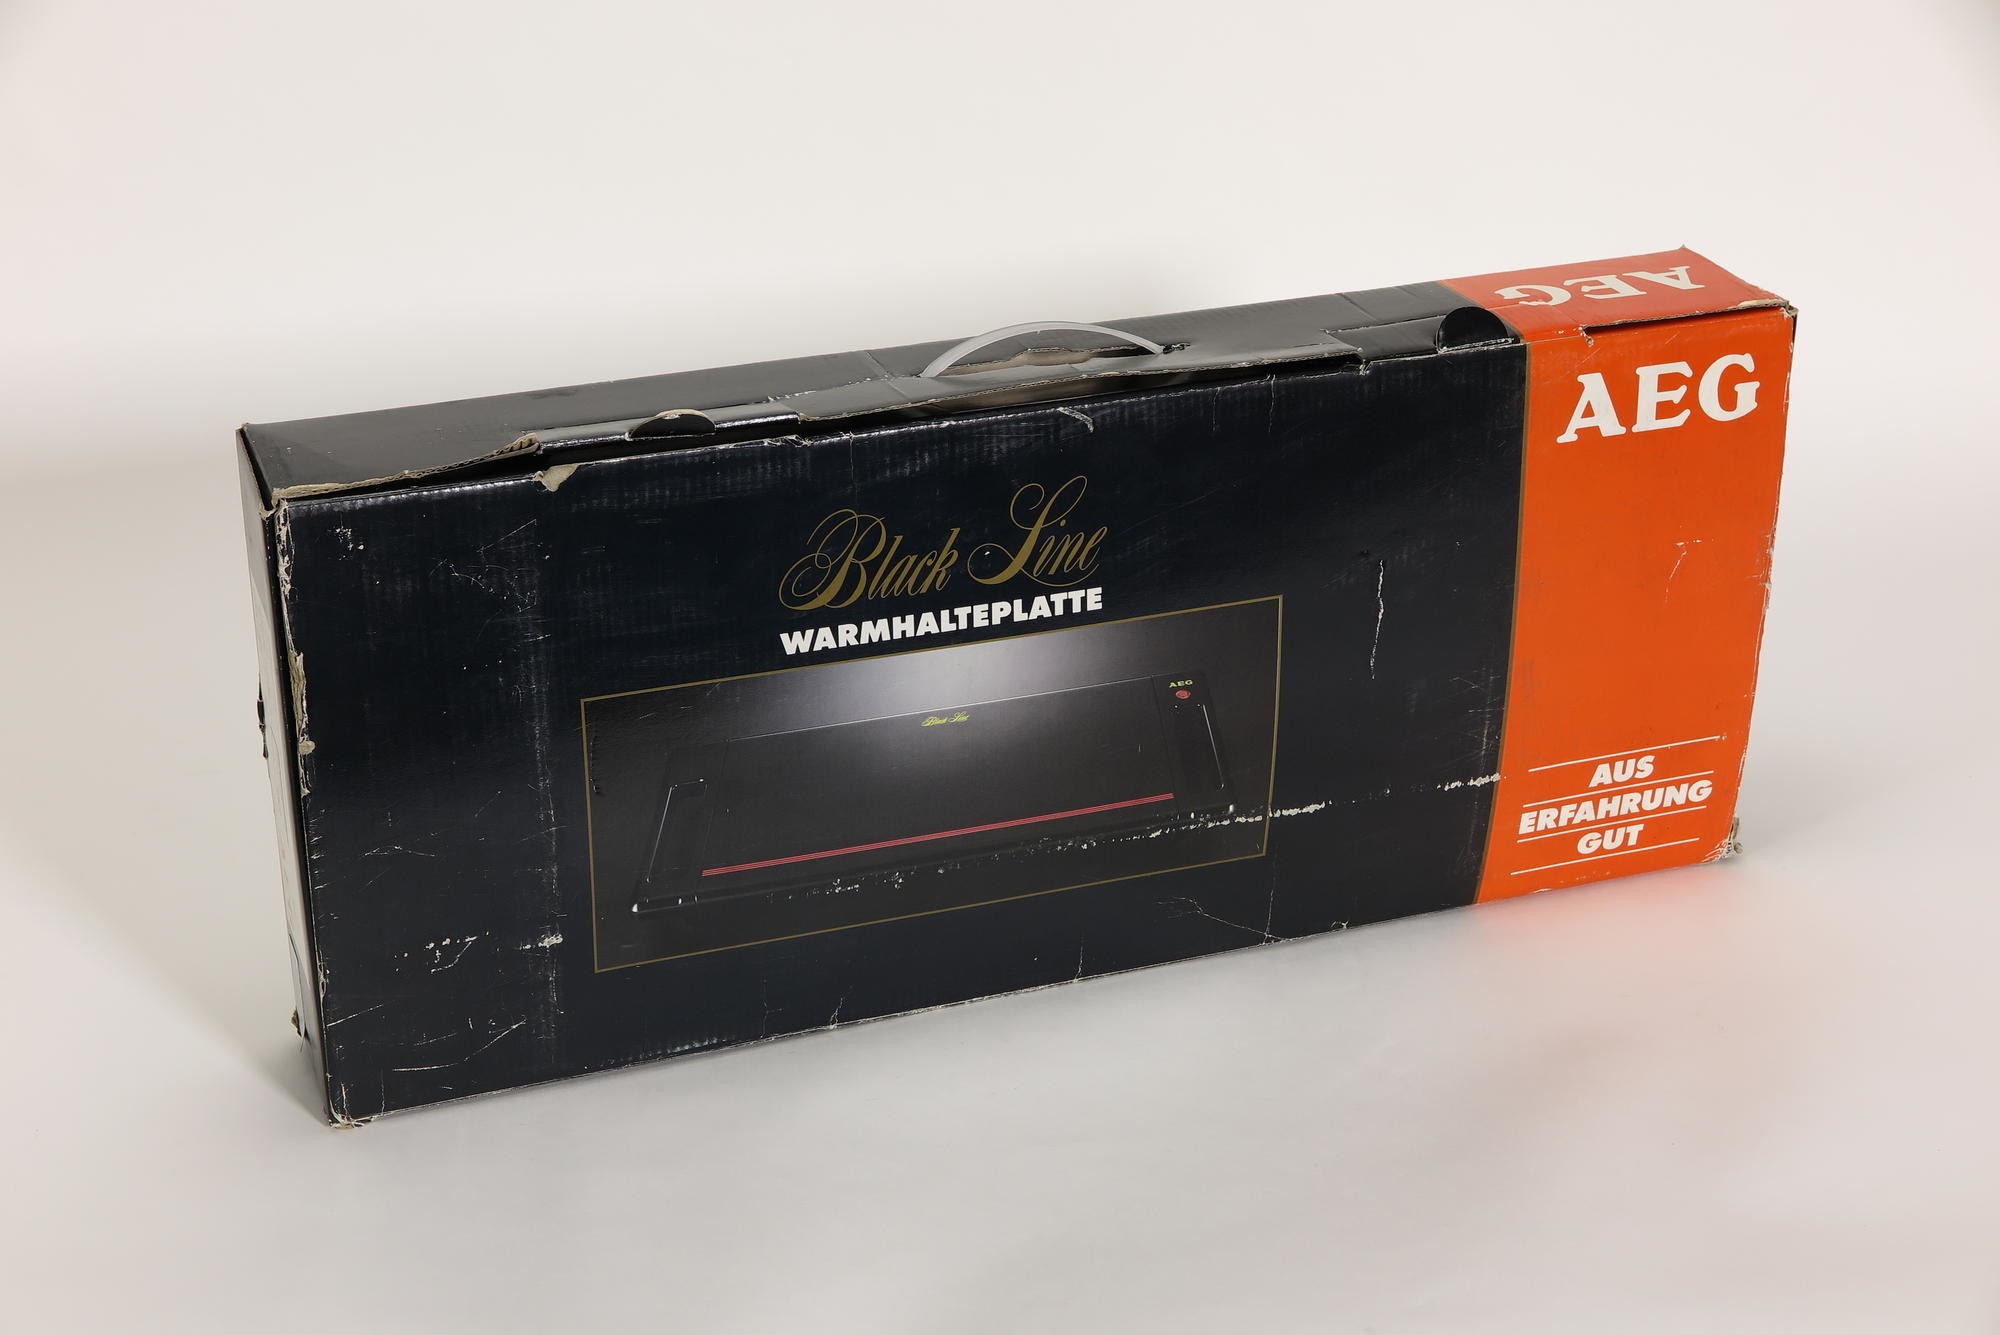 Verpackungskarton, Zubehör zu Warmhalteplatte AEG Typ EWK 0046 Modell WHP BL `Black Line Wärmehalteplatte` (Stiftung Deutsches Technikmuseum Berlin CC0)